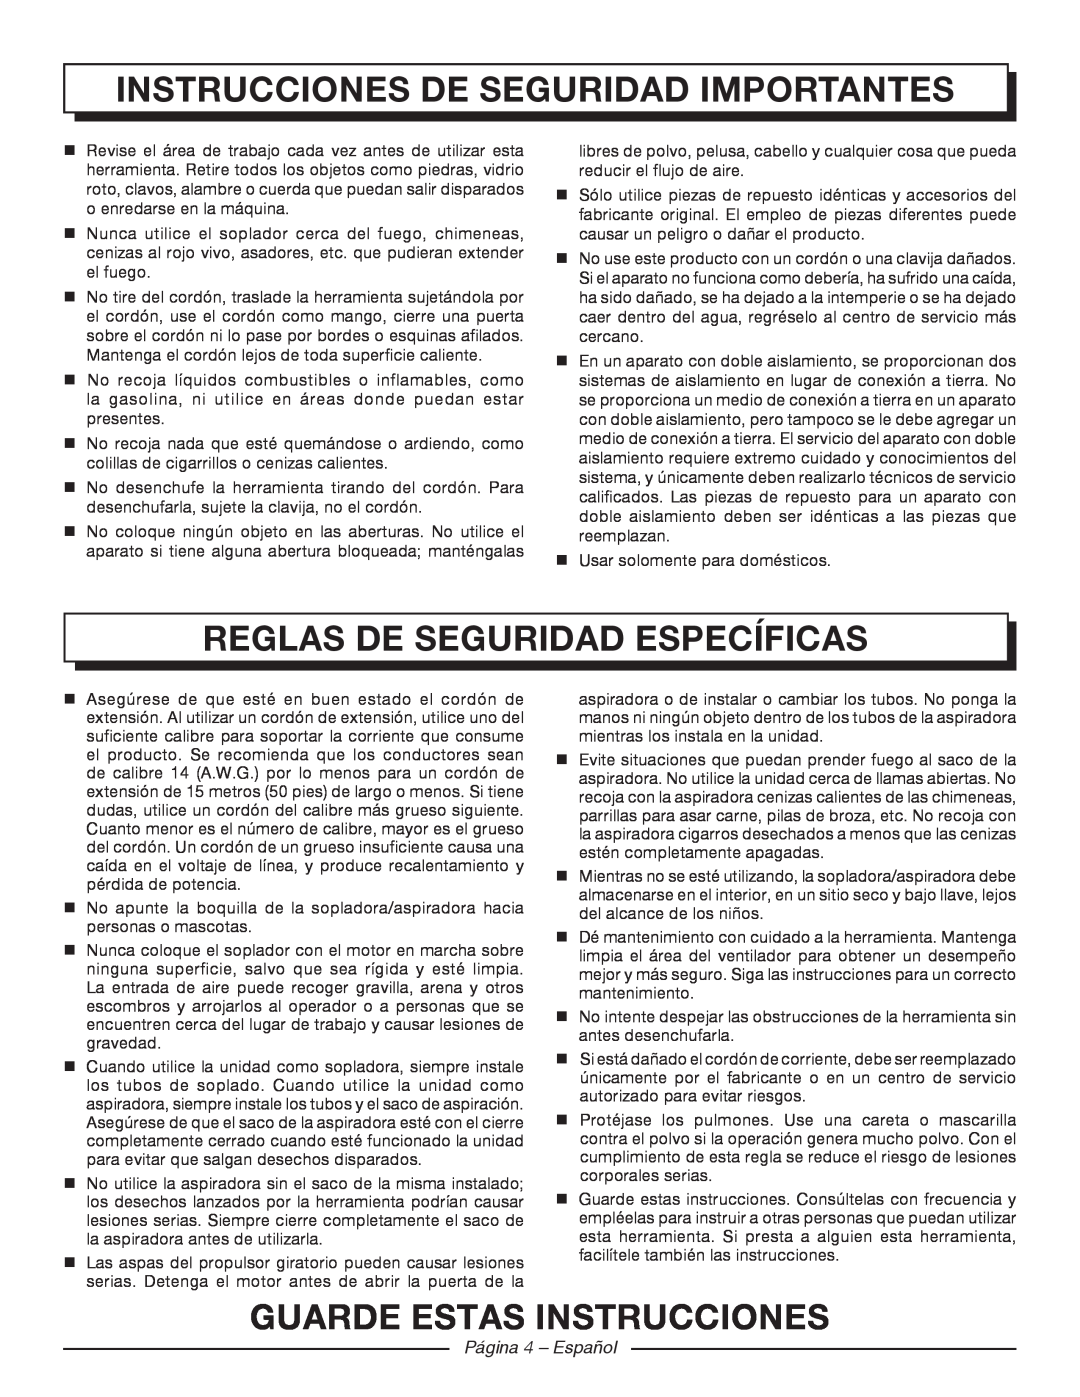 Homelite UT42120 manuel dutilisation Reglas De Seguridad Específicas, Guarde estas instrucciones, Página 4 - Español 